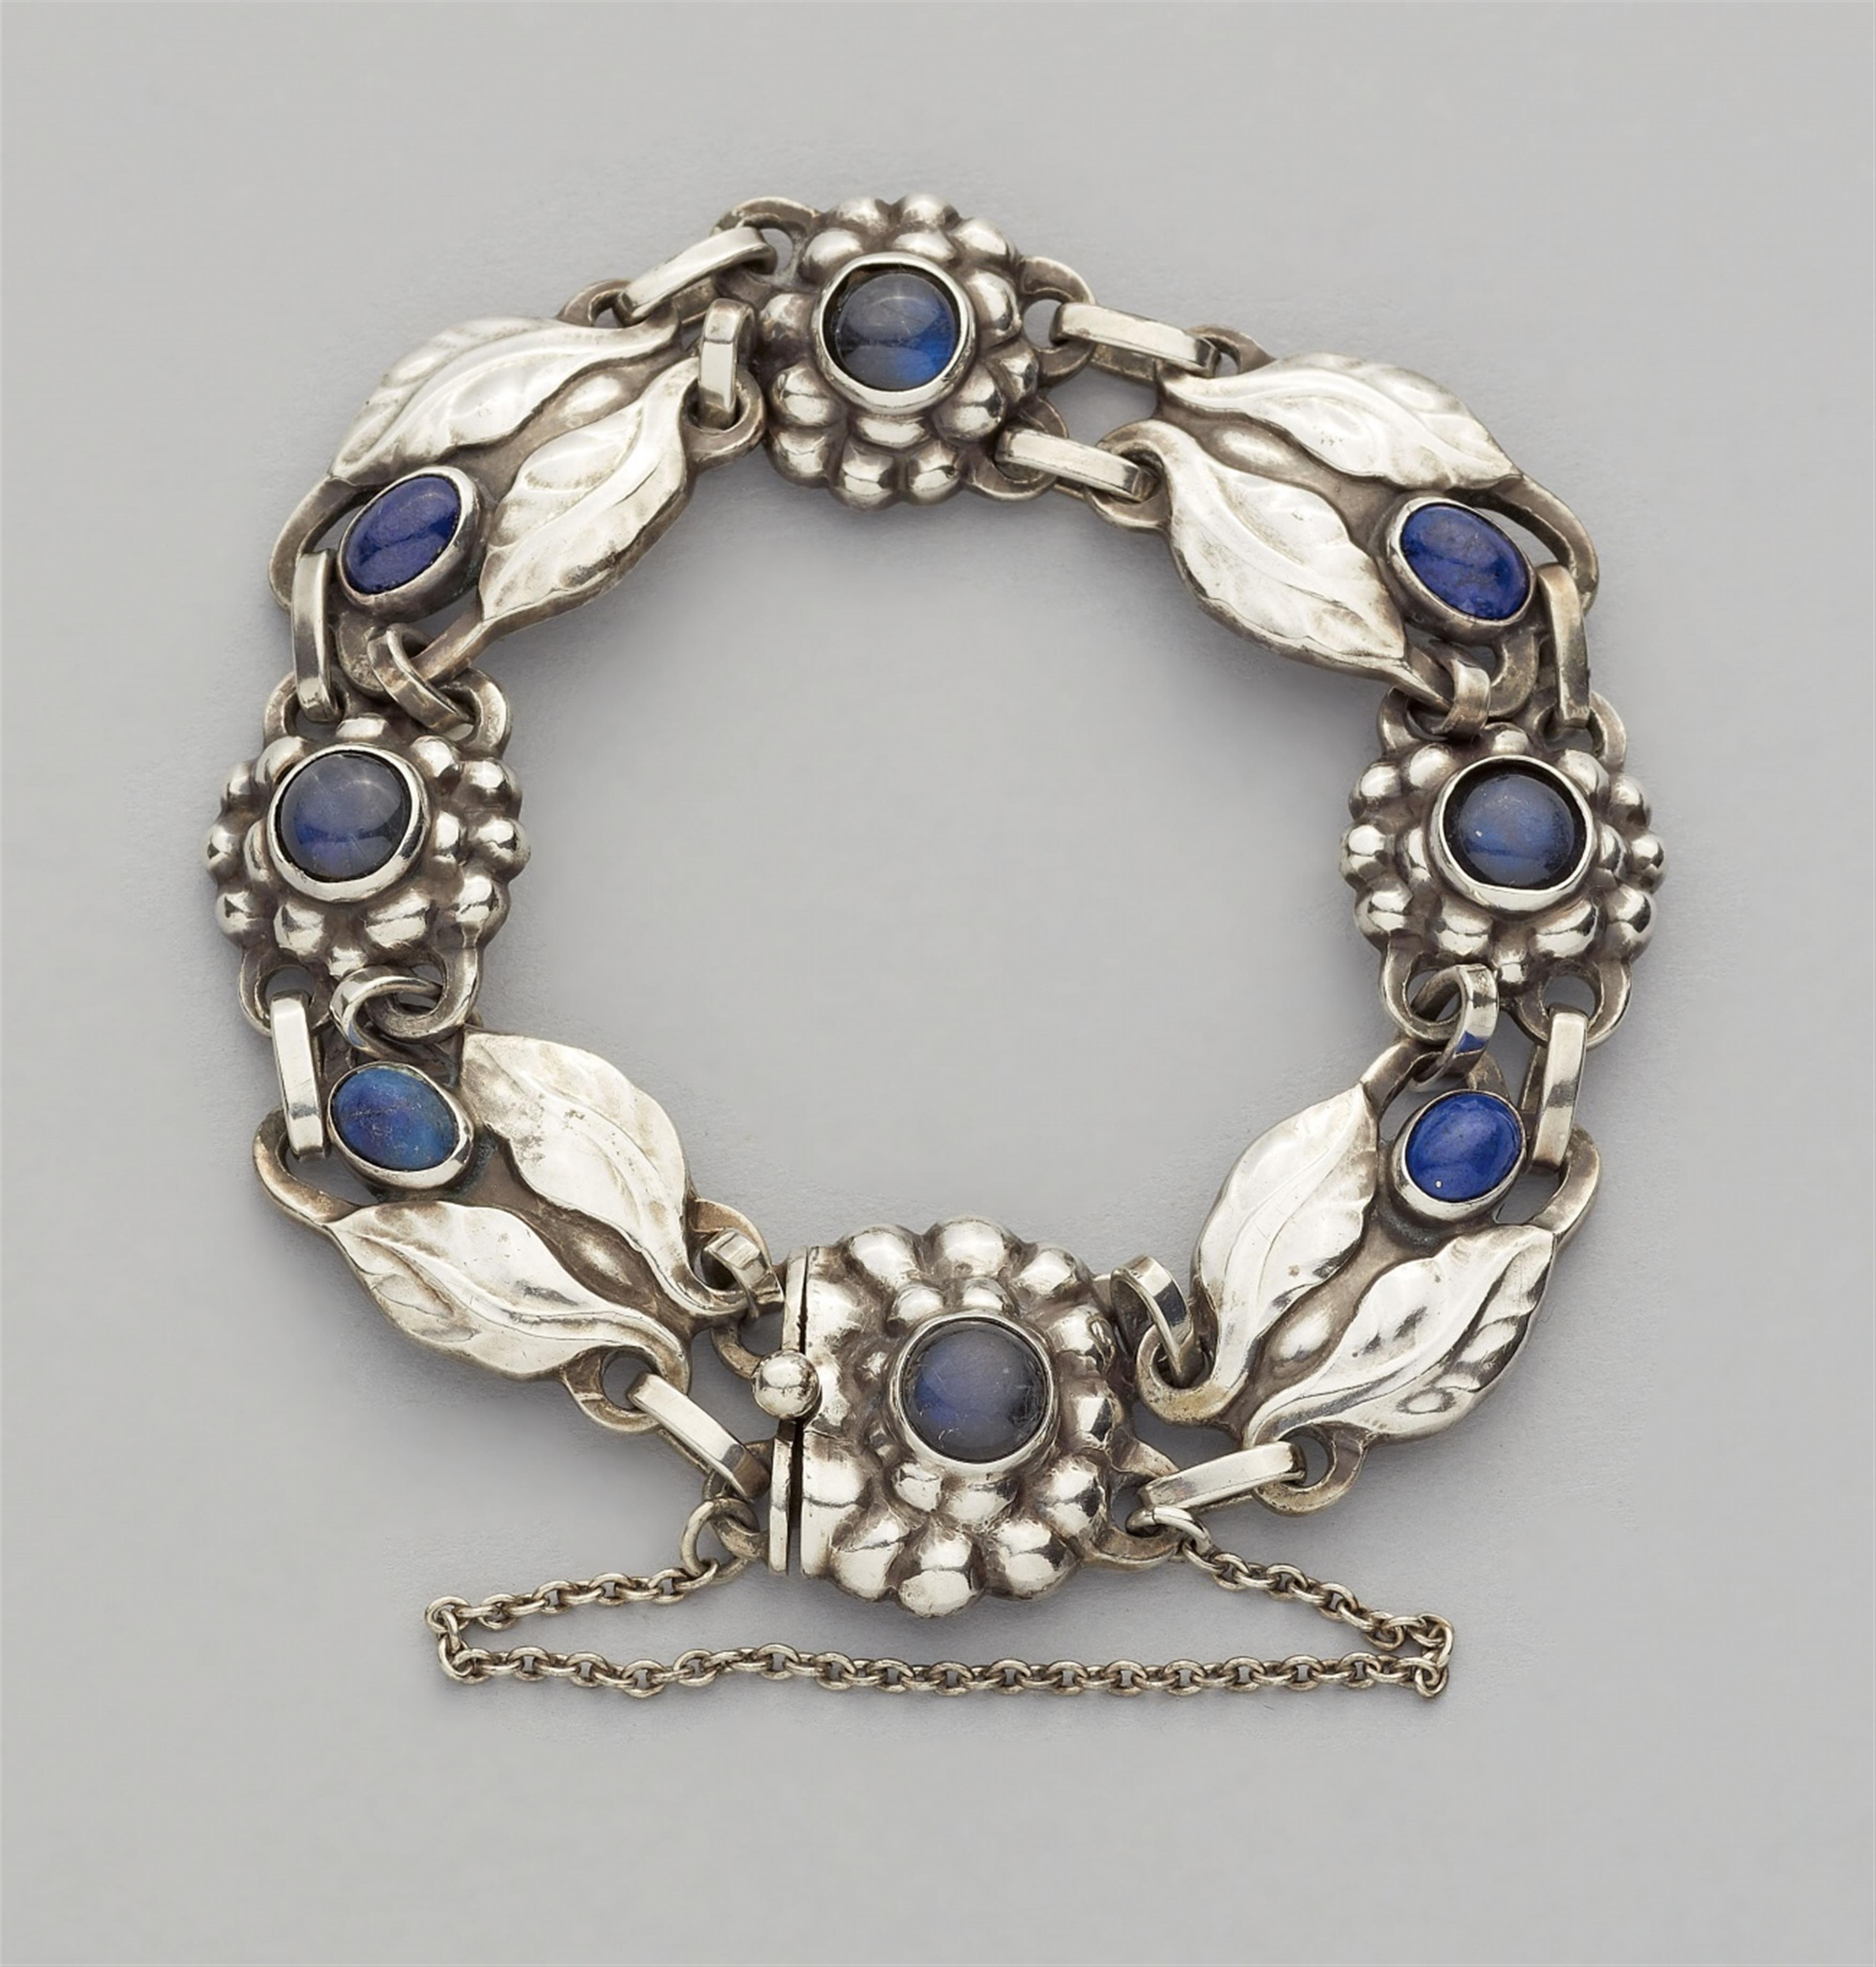 A Jugendstil silver bracelet by Georg Jensen, model no. 3 - image-1